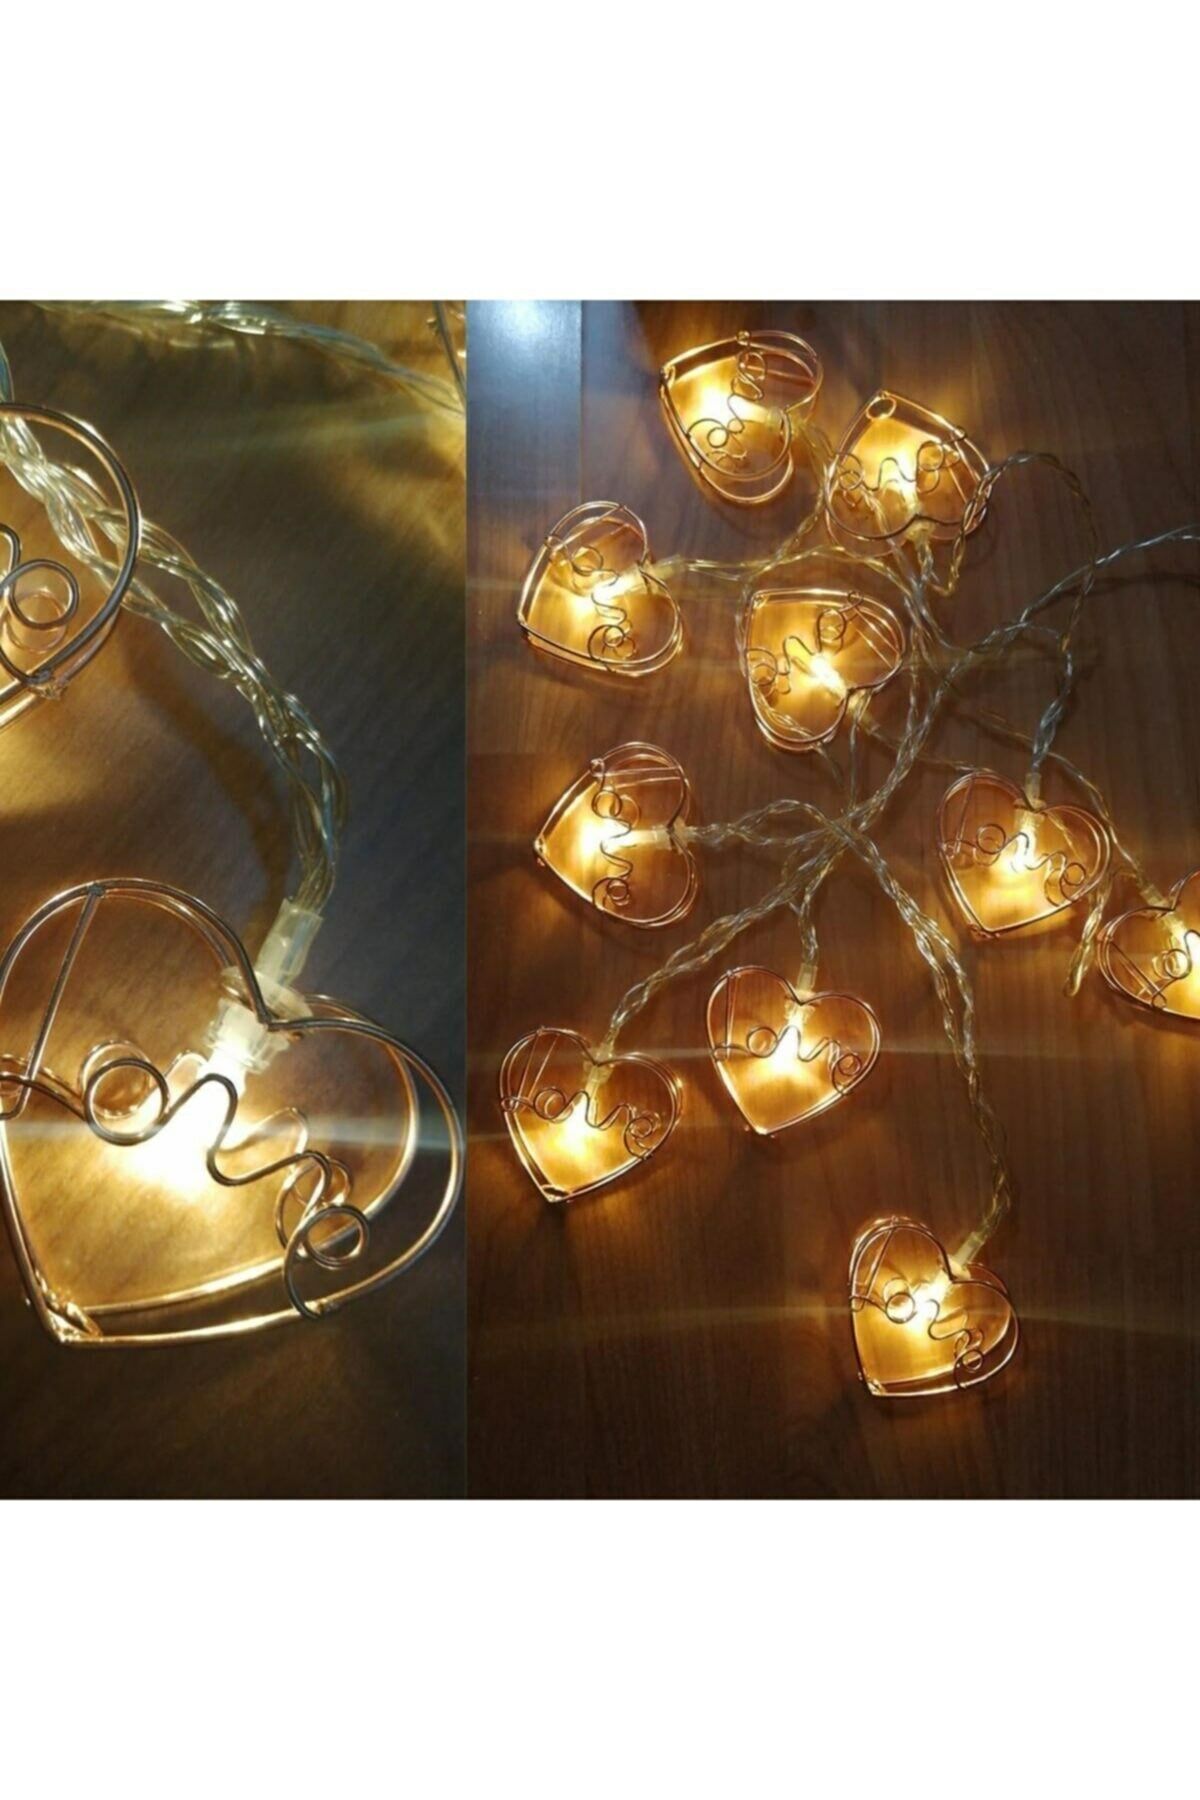 Kalpli Love Yazılı Bakır Metal Şerit Led Işık Zinciri Aydınlatma